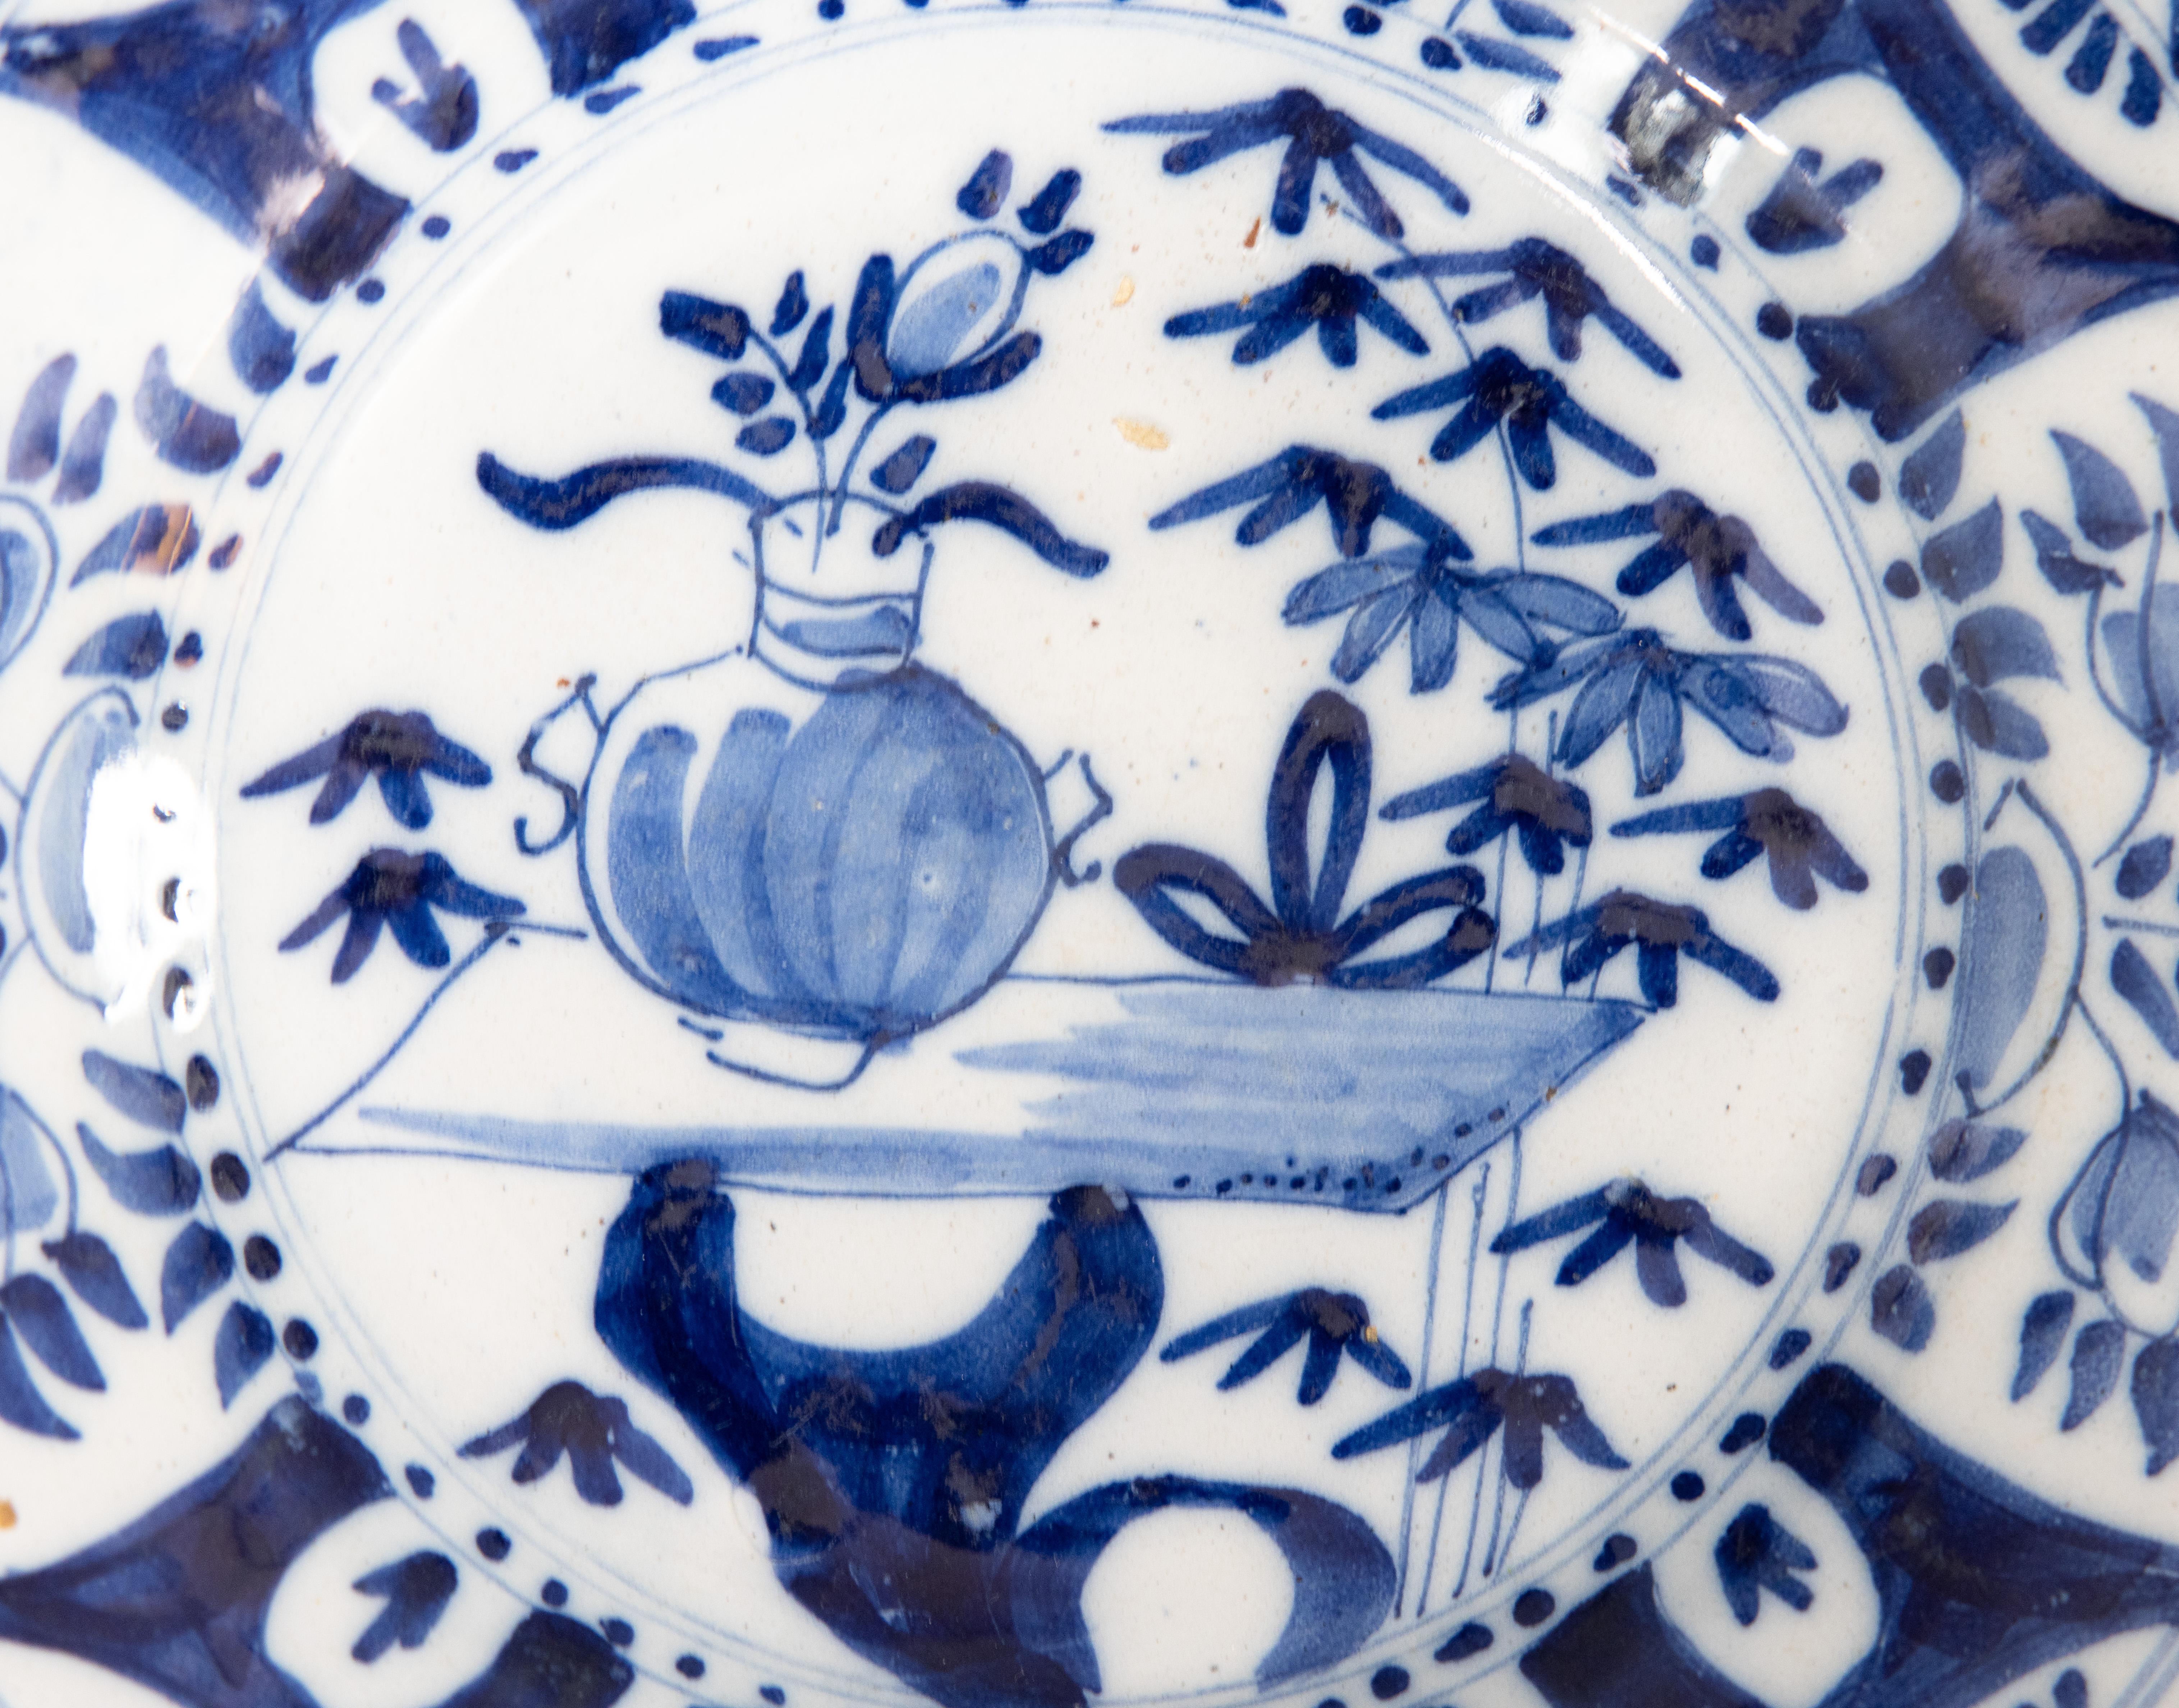 Une jolie assiette ancienne Delft Chinoiserie hollandaise du 18e siècle, peinte à la main de motifs floraux en bleu cobalt et blanc vibrant. Il serait fabuleux exposé sur un mur ou une étagère dans n'importe quelle pièce.

DIMENSIONS
9 